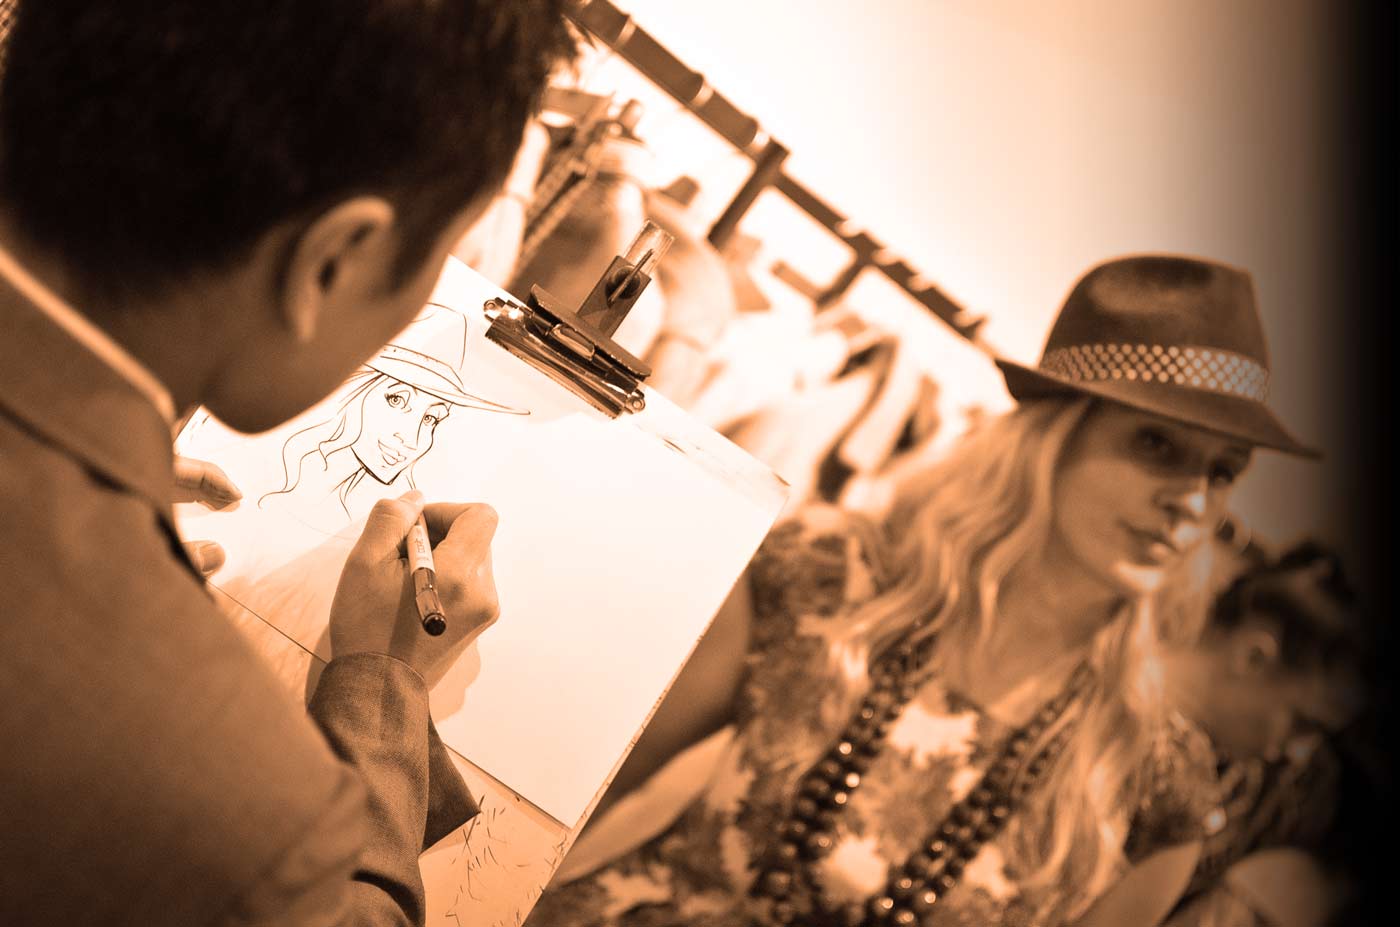 Schnellzeichner auf Eröffnungsfeier eines Modegeschäftes, Karikatur auf Einladungskarte